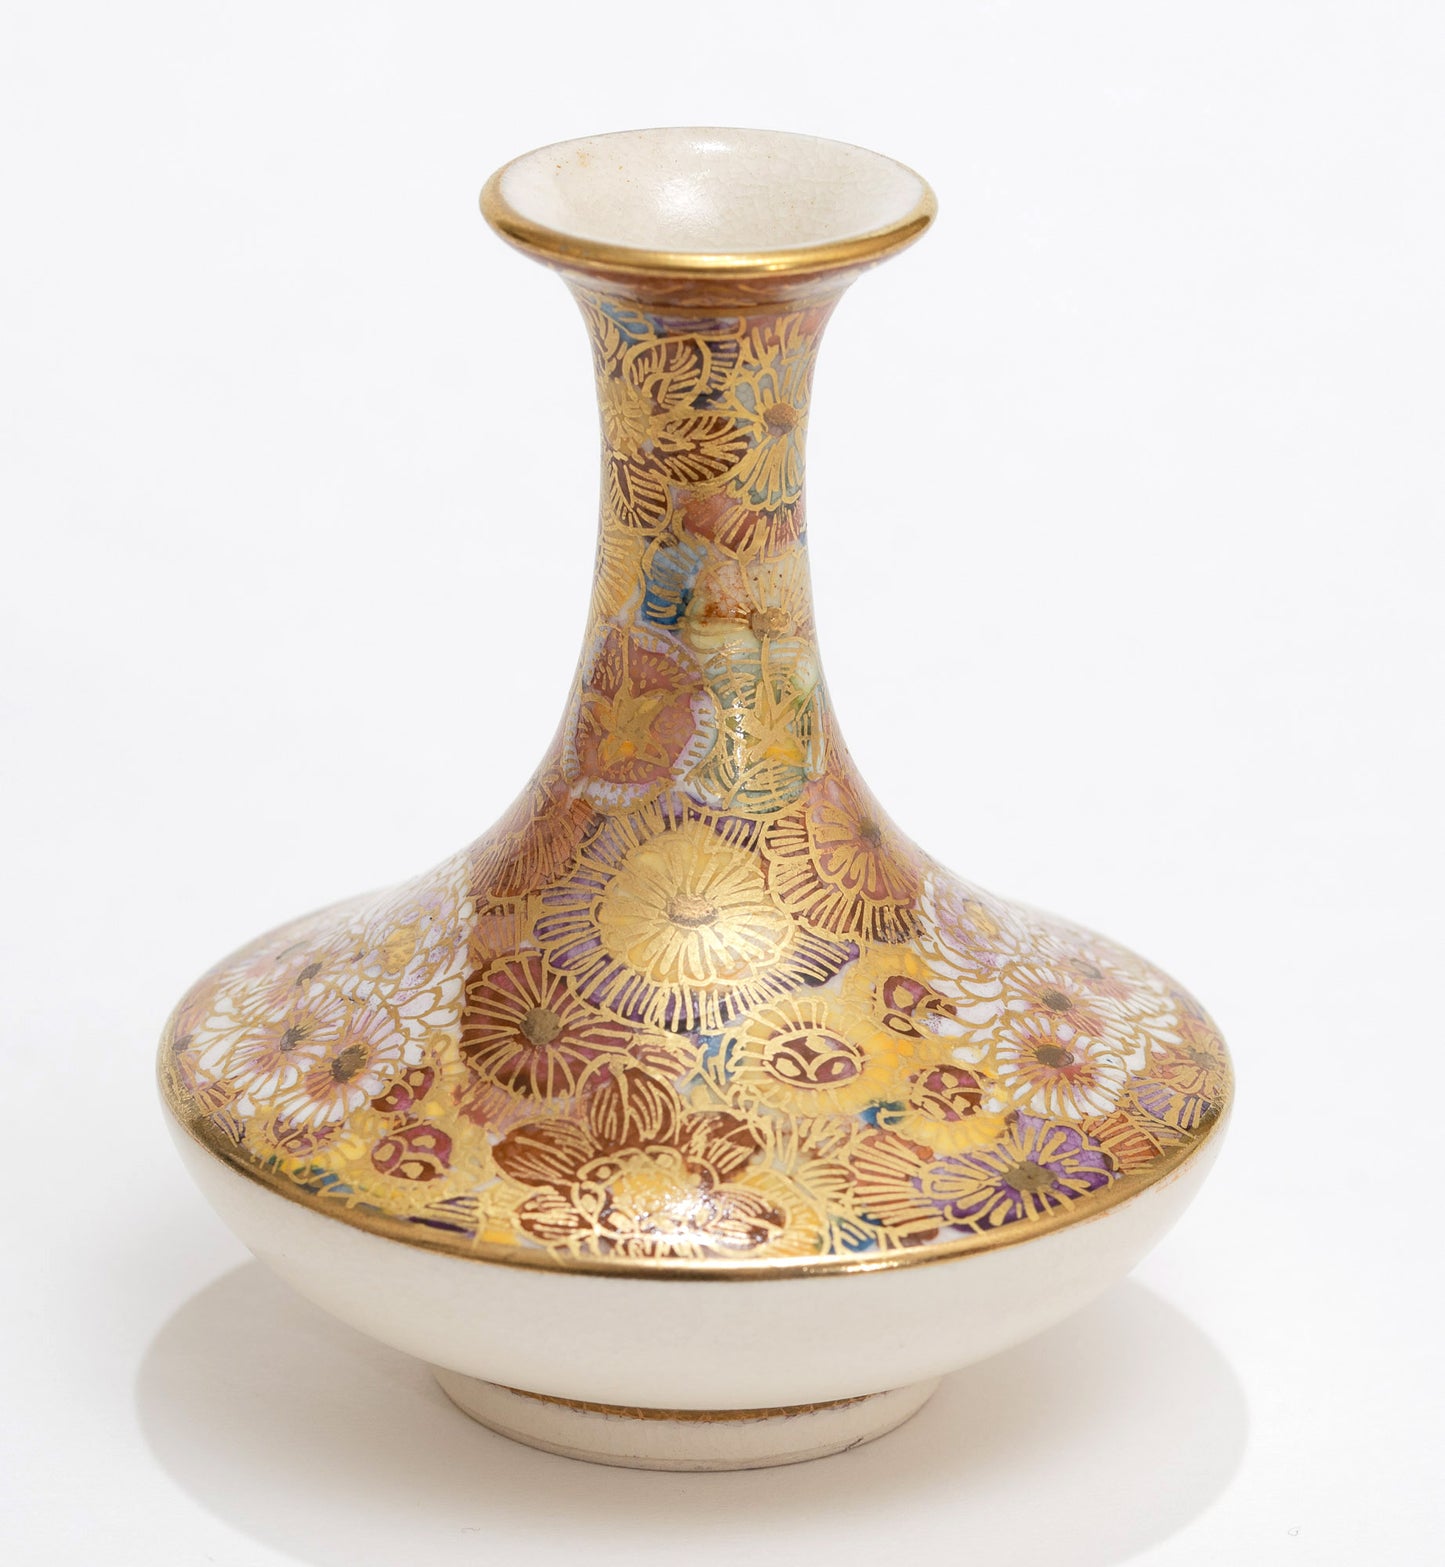 Antique Japanese Satsuma Ware Pottery Mini Vase - Hand Painted Meiji Era c1900 (3113)